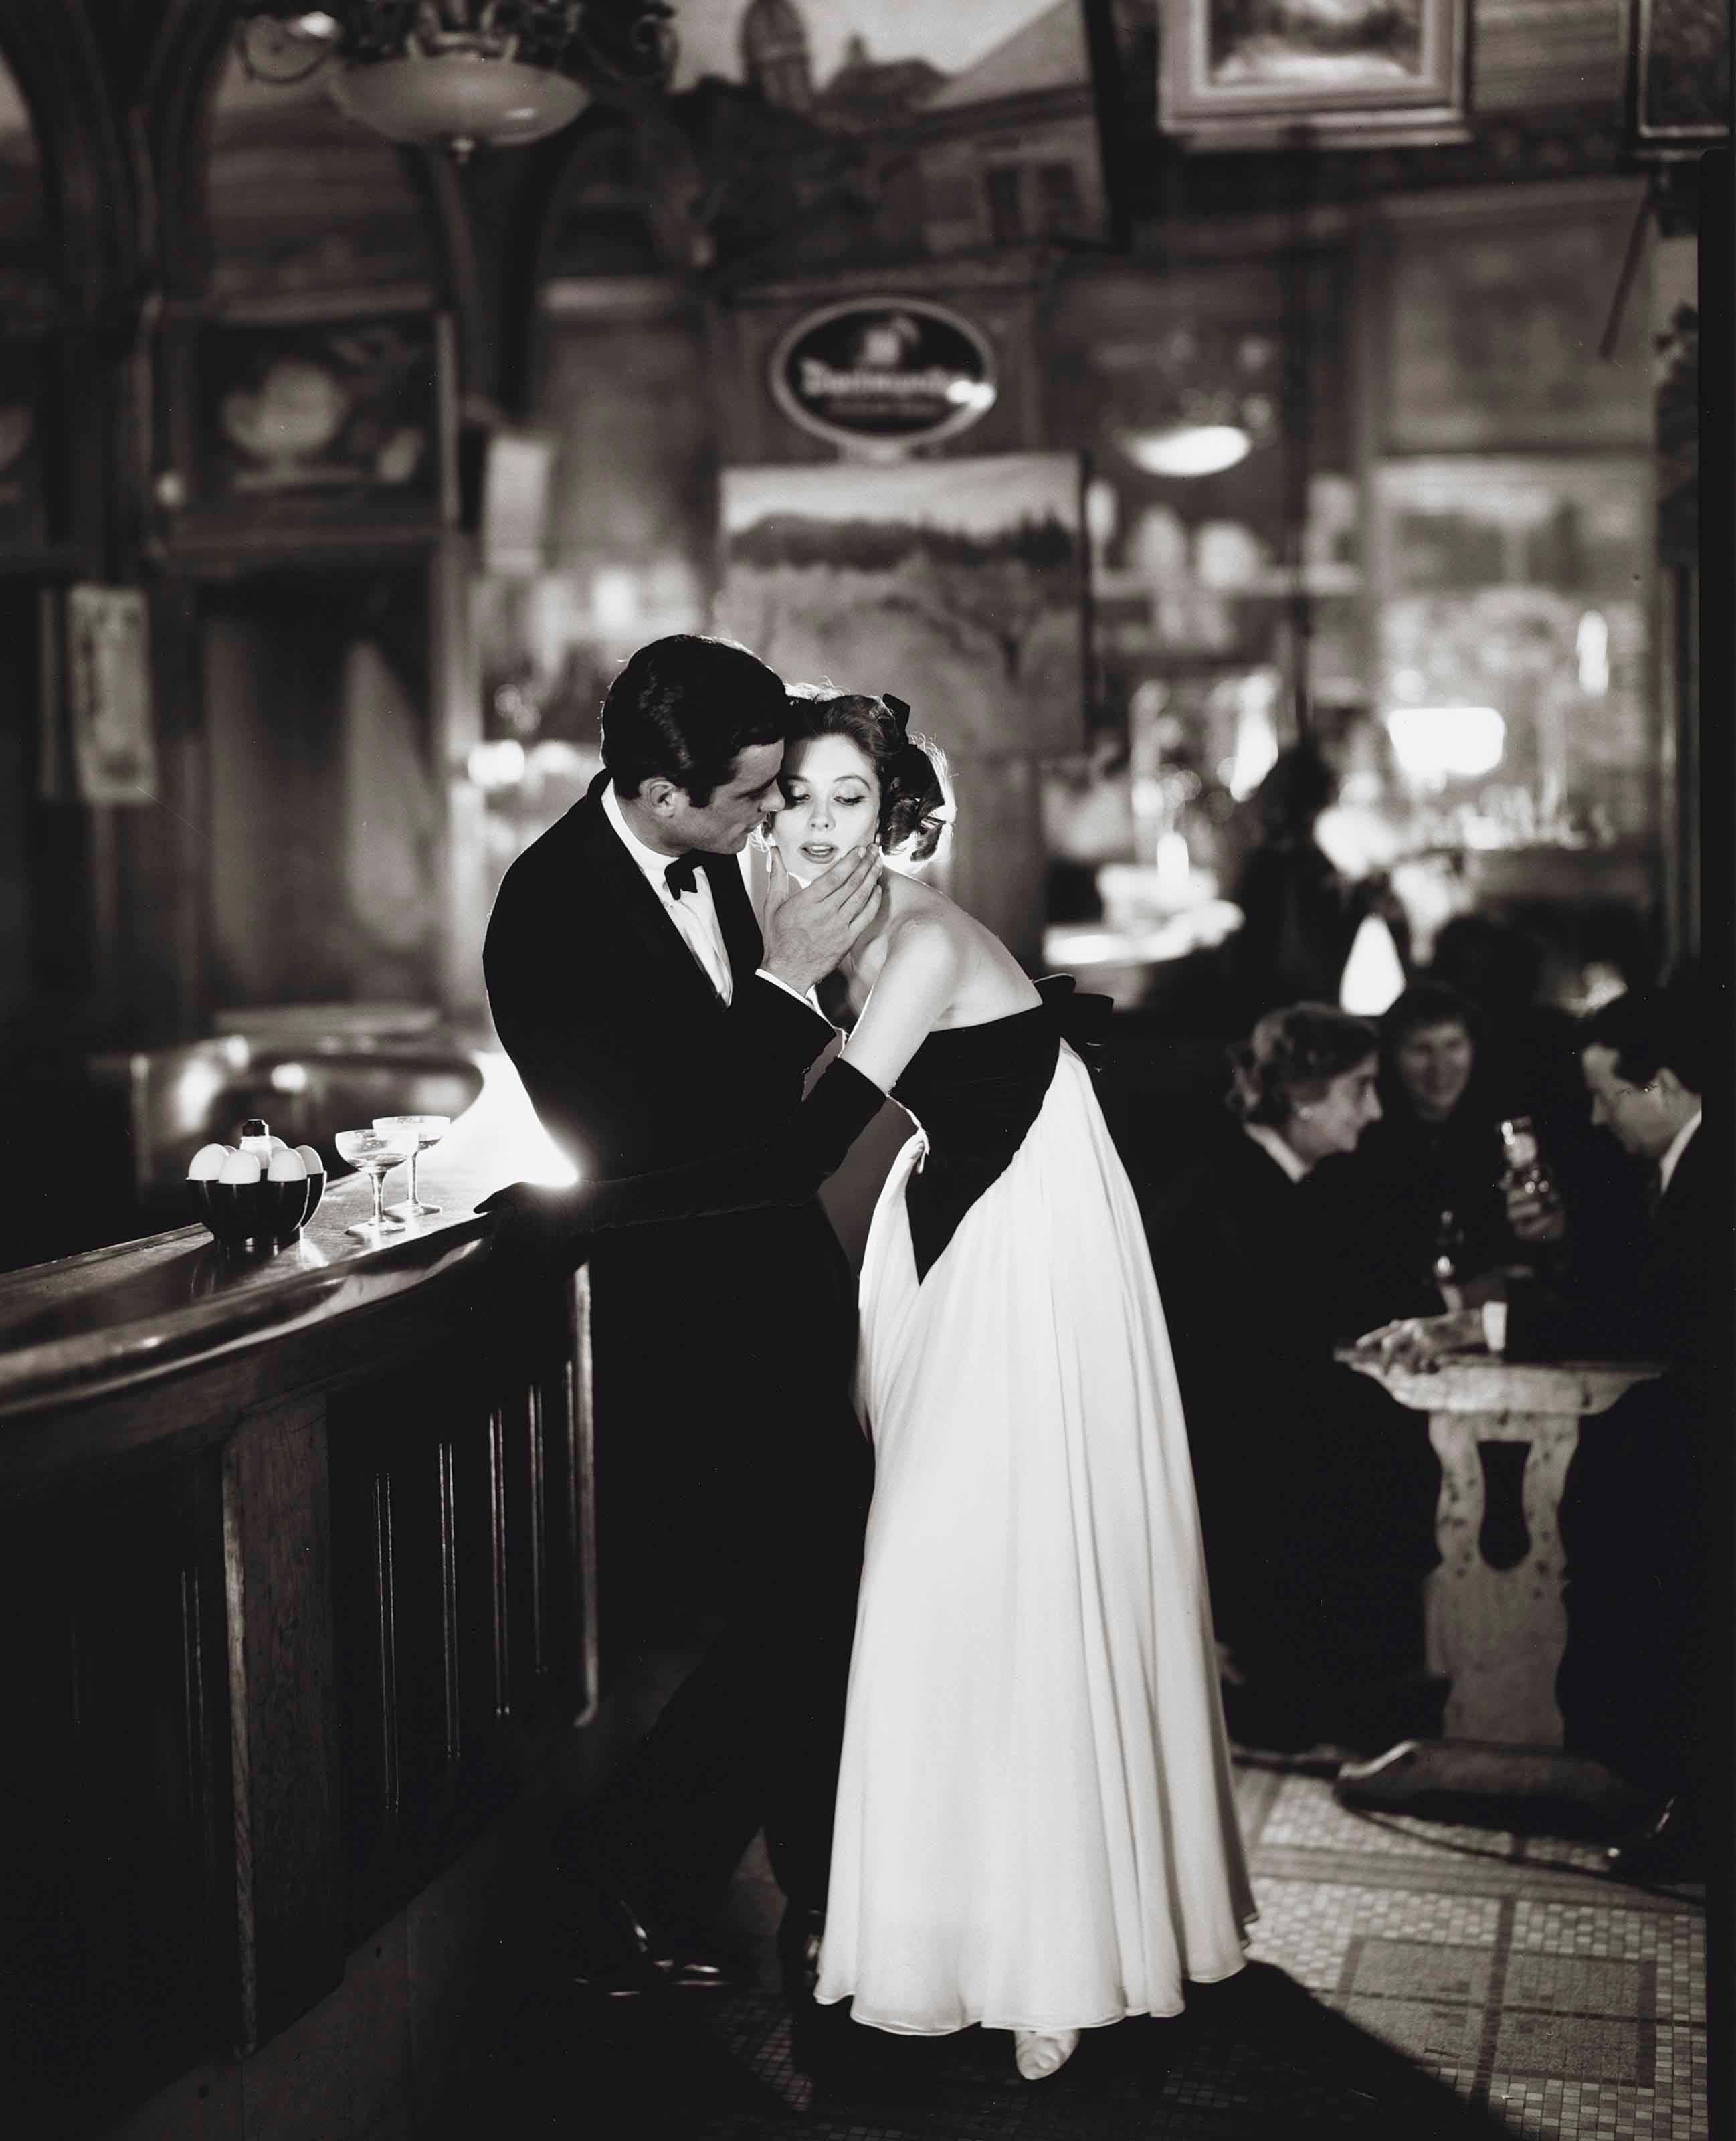 Richard Avedon Figurative Photograph - Suzy Parker & Gardner McKay, Dress by Balmain, Café des Beaux-Arts, Paris, 1956